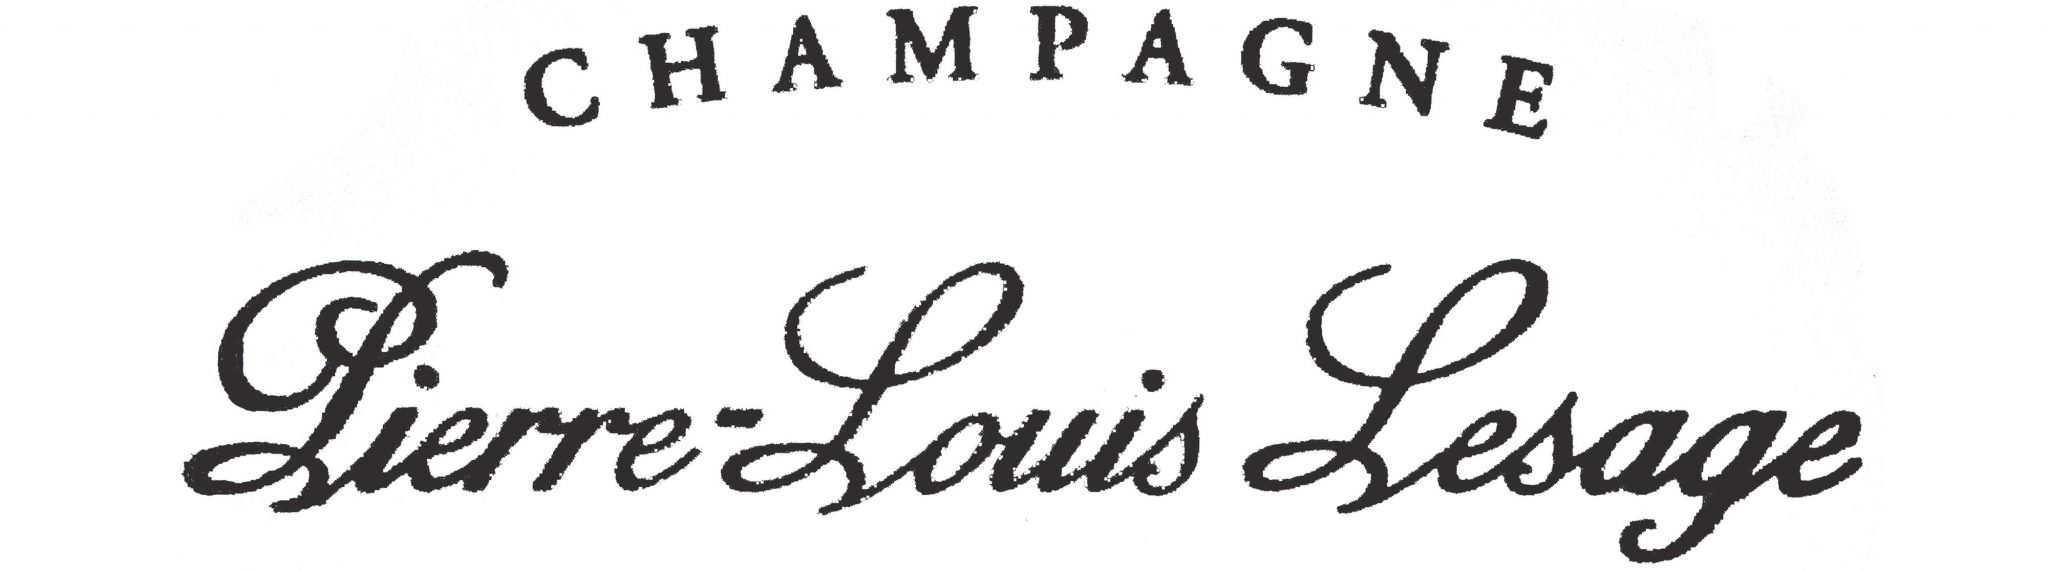 Champagne Pierre Louis Lesage